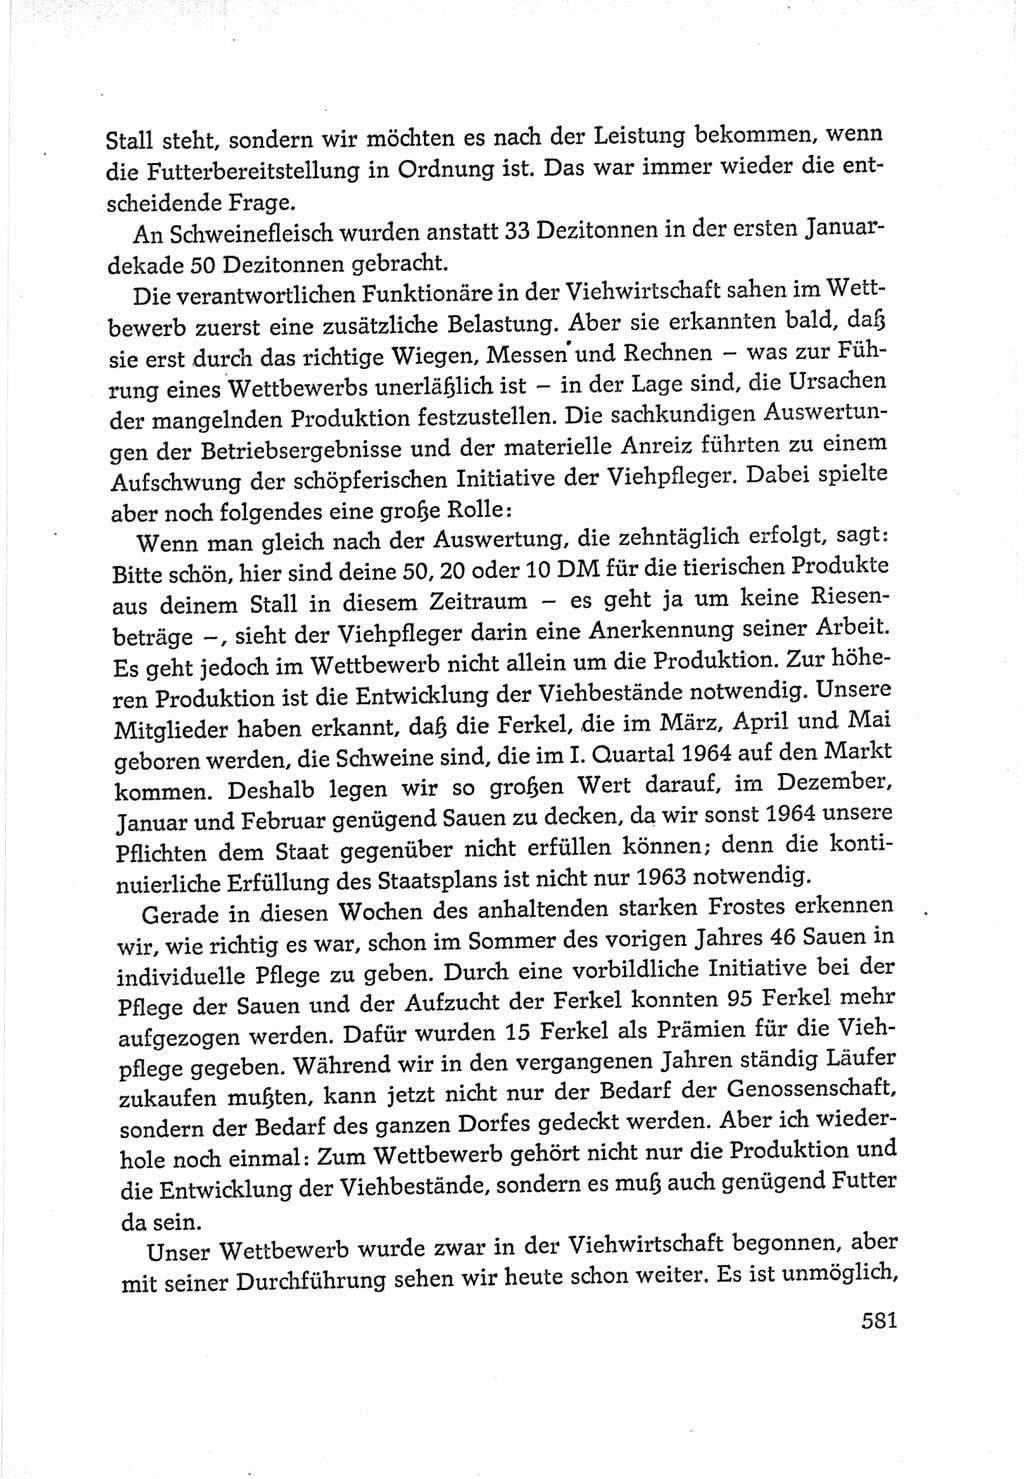 Protokoll der Verhandlungen des Ⅵ. Parteitages der Sozialistischen Einheitspartei Deutschlands (SED) [Deutsche Demokratische Republik (DDR)] 1963, Band Ⅰ, Seite 581 (Prot. Verh. Ⅵ. PT SED DDR 1963, Bd. Ⅰ, S. 581)